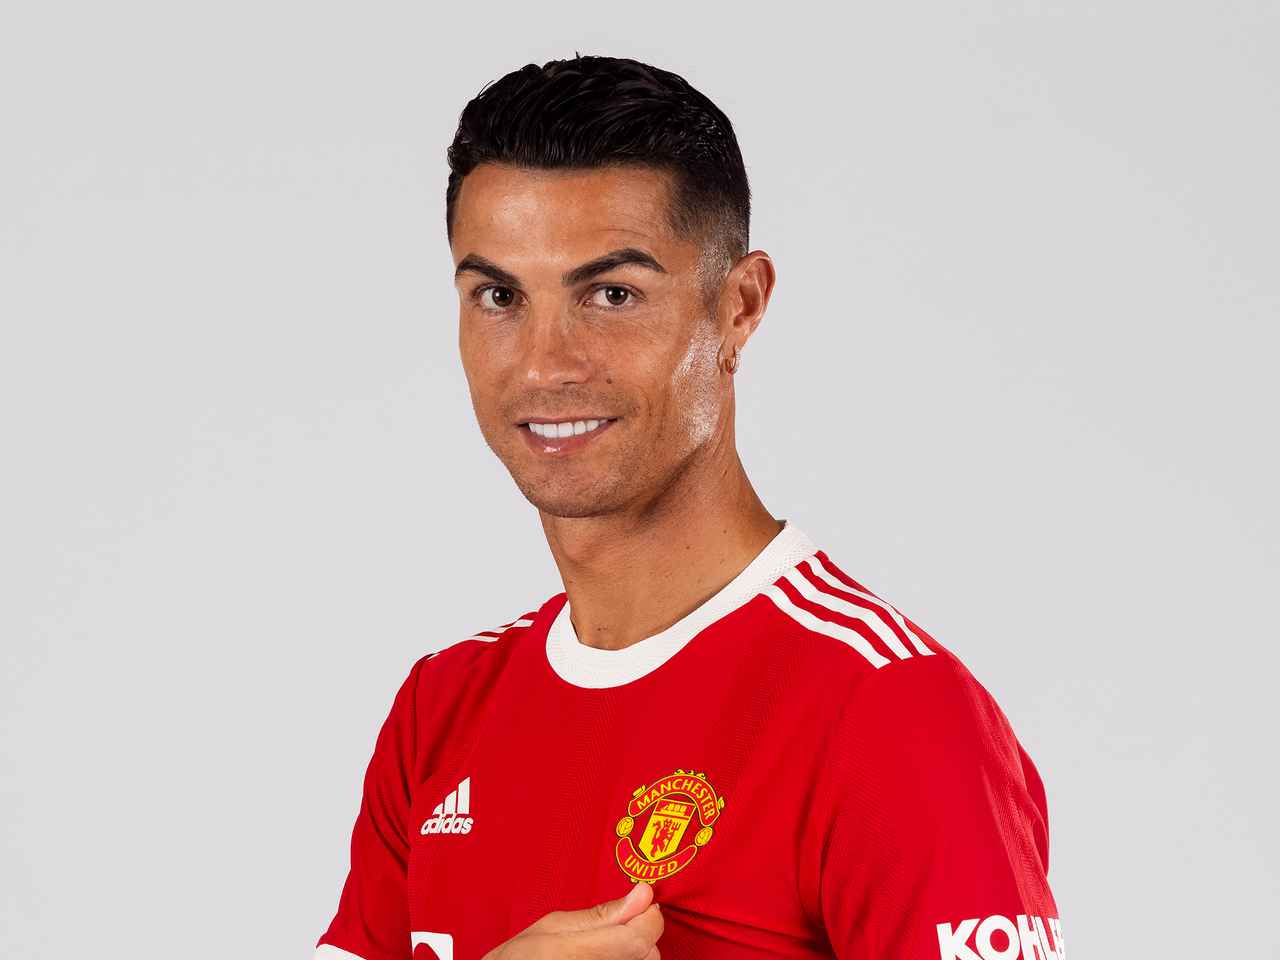 Le nouveau numéro de Ronaldo à United